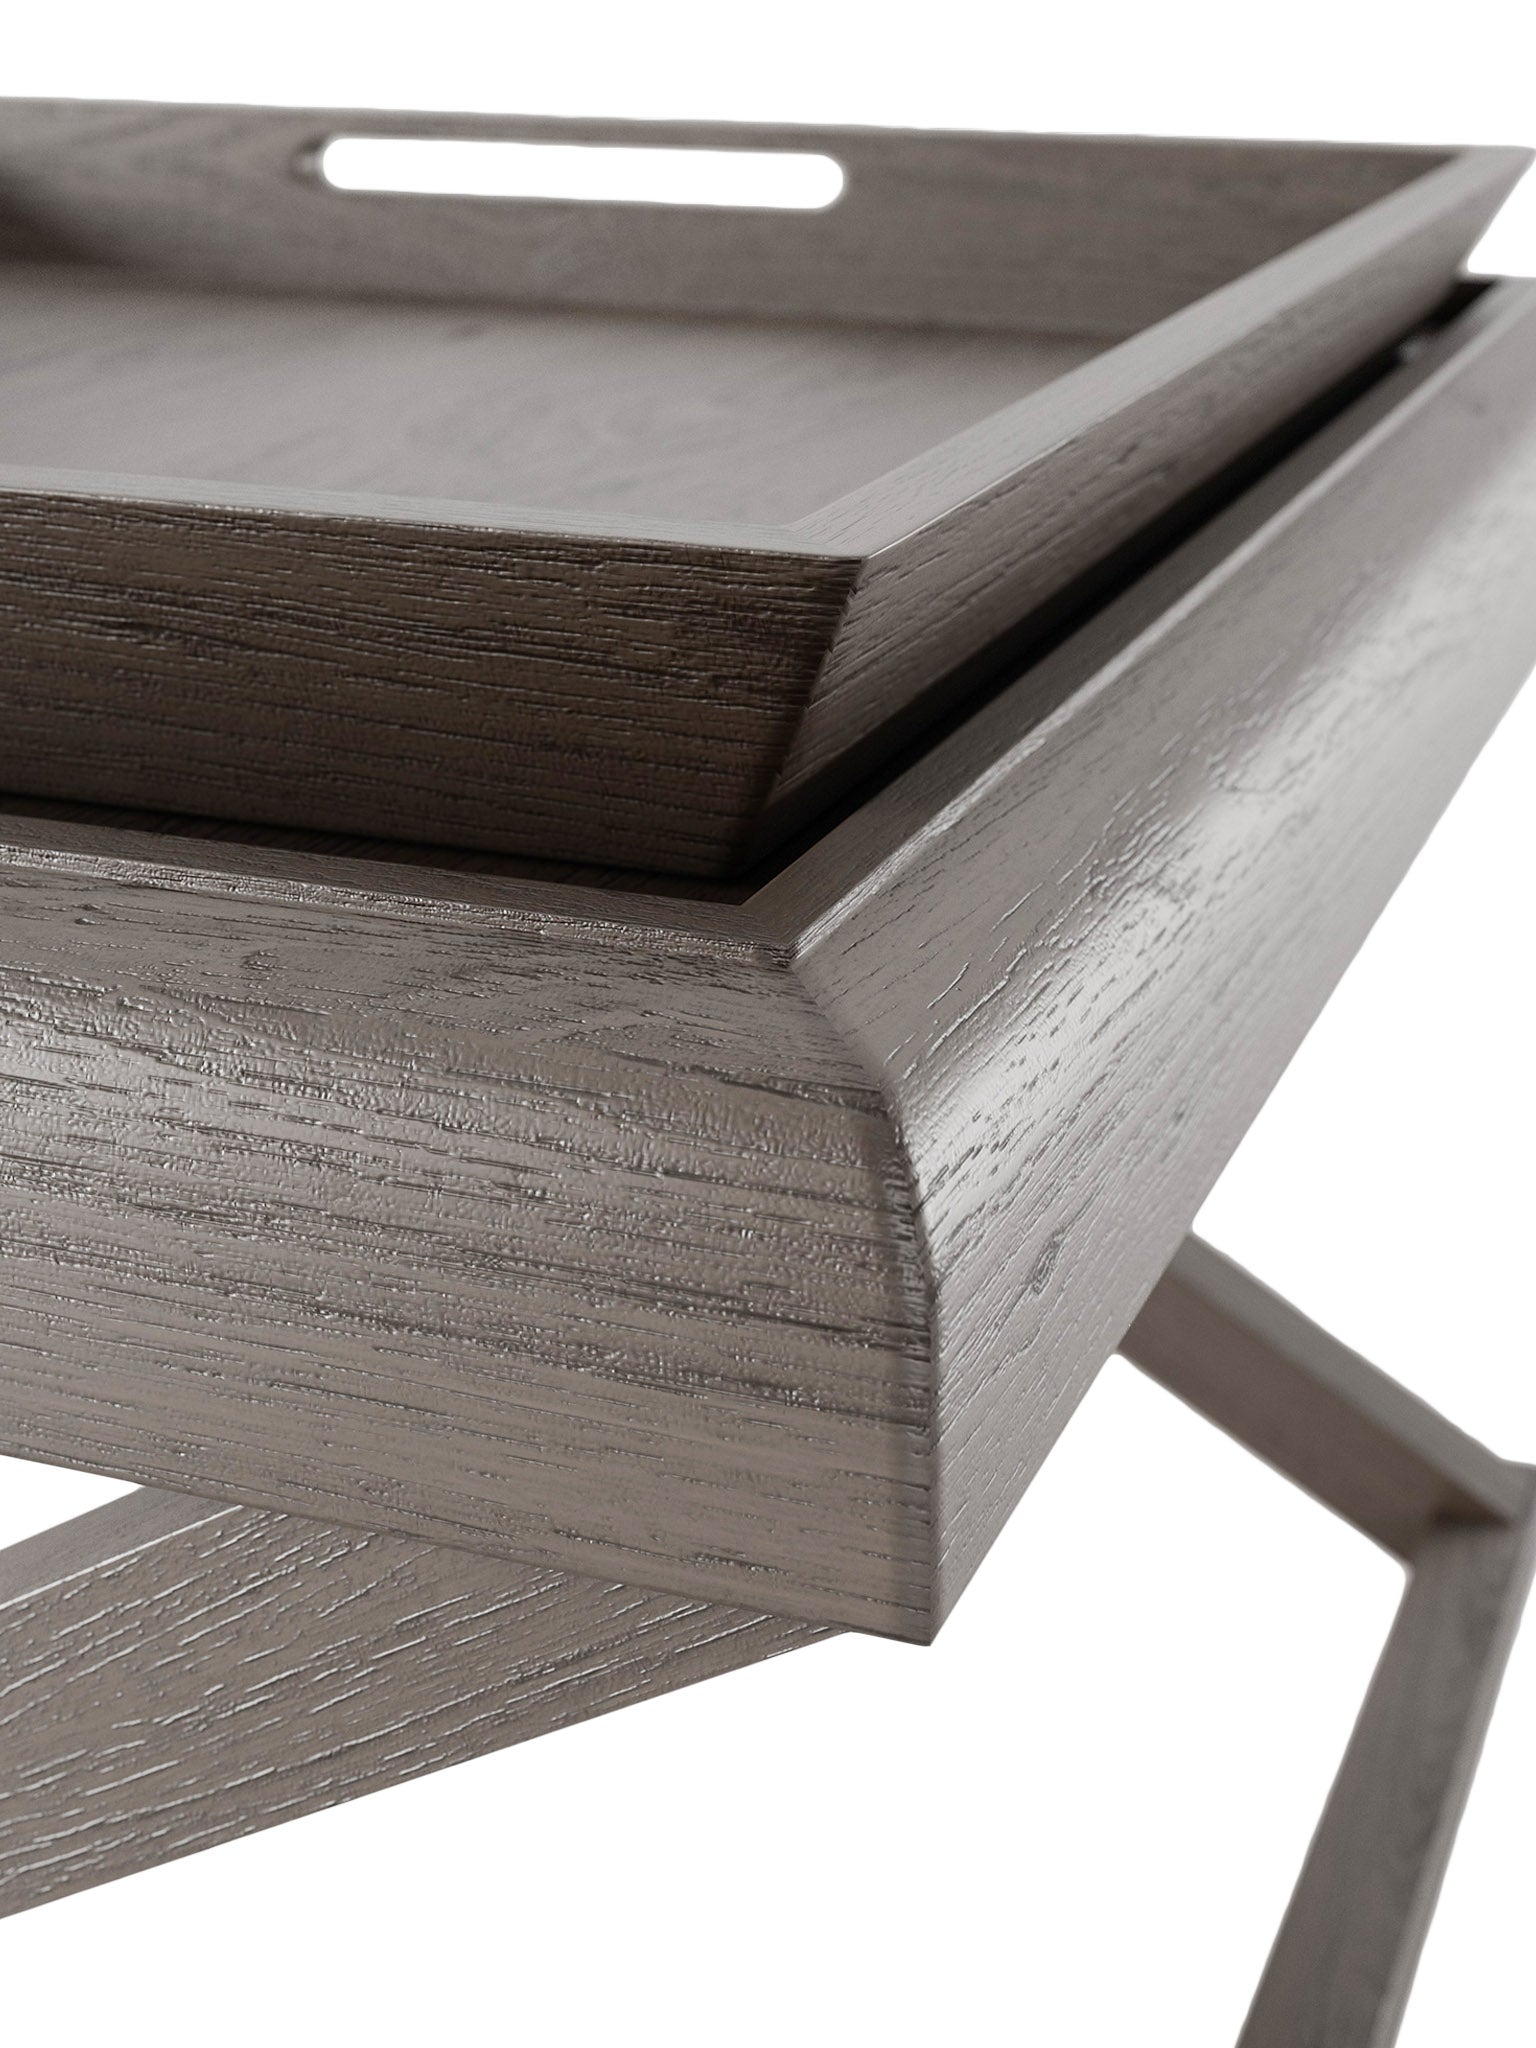 Wooden oak crossed legged end table